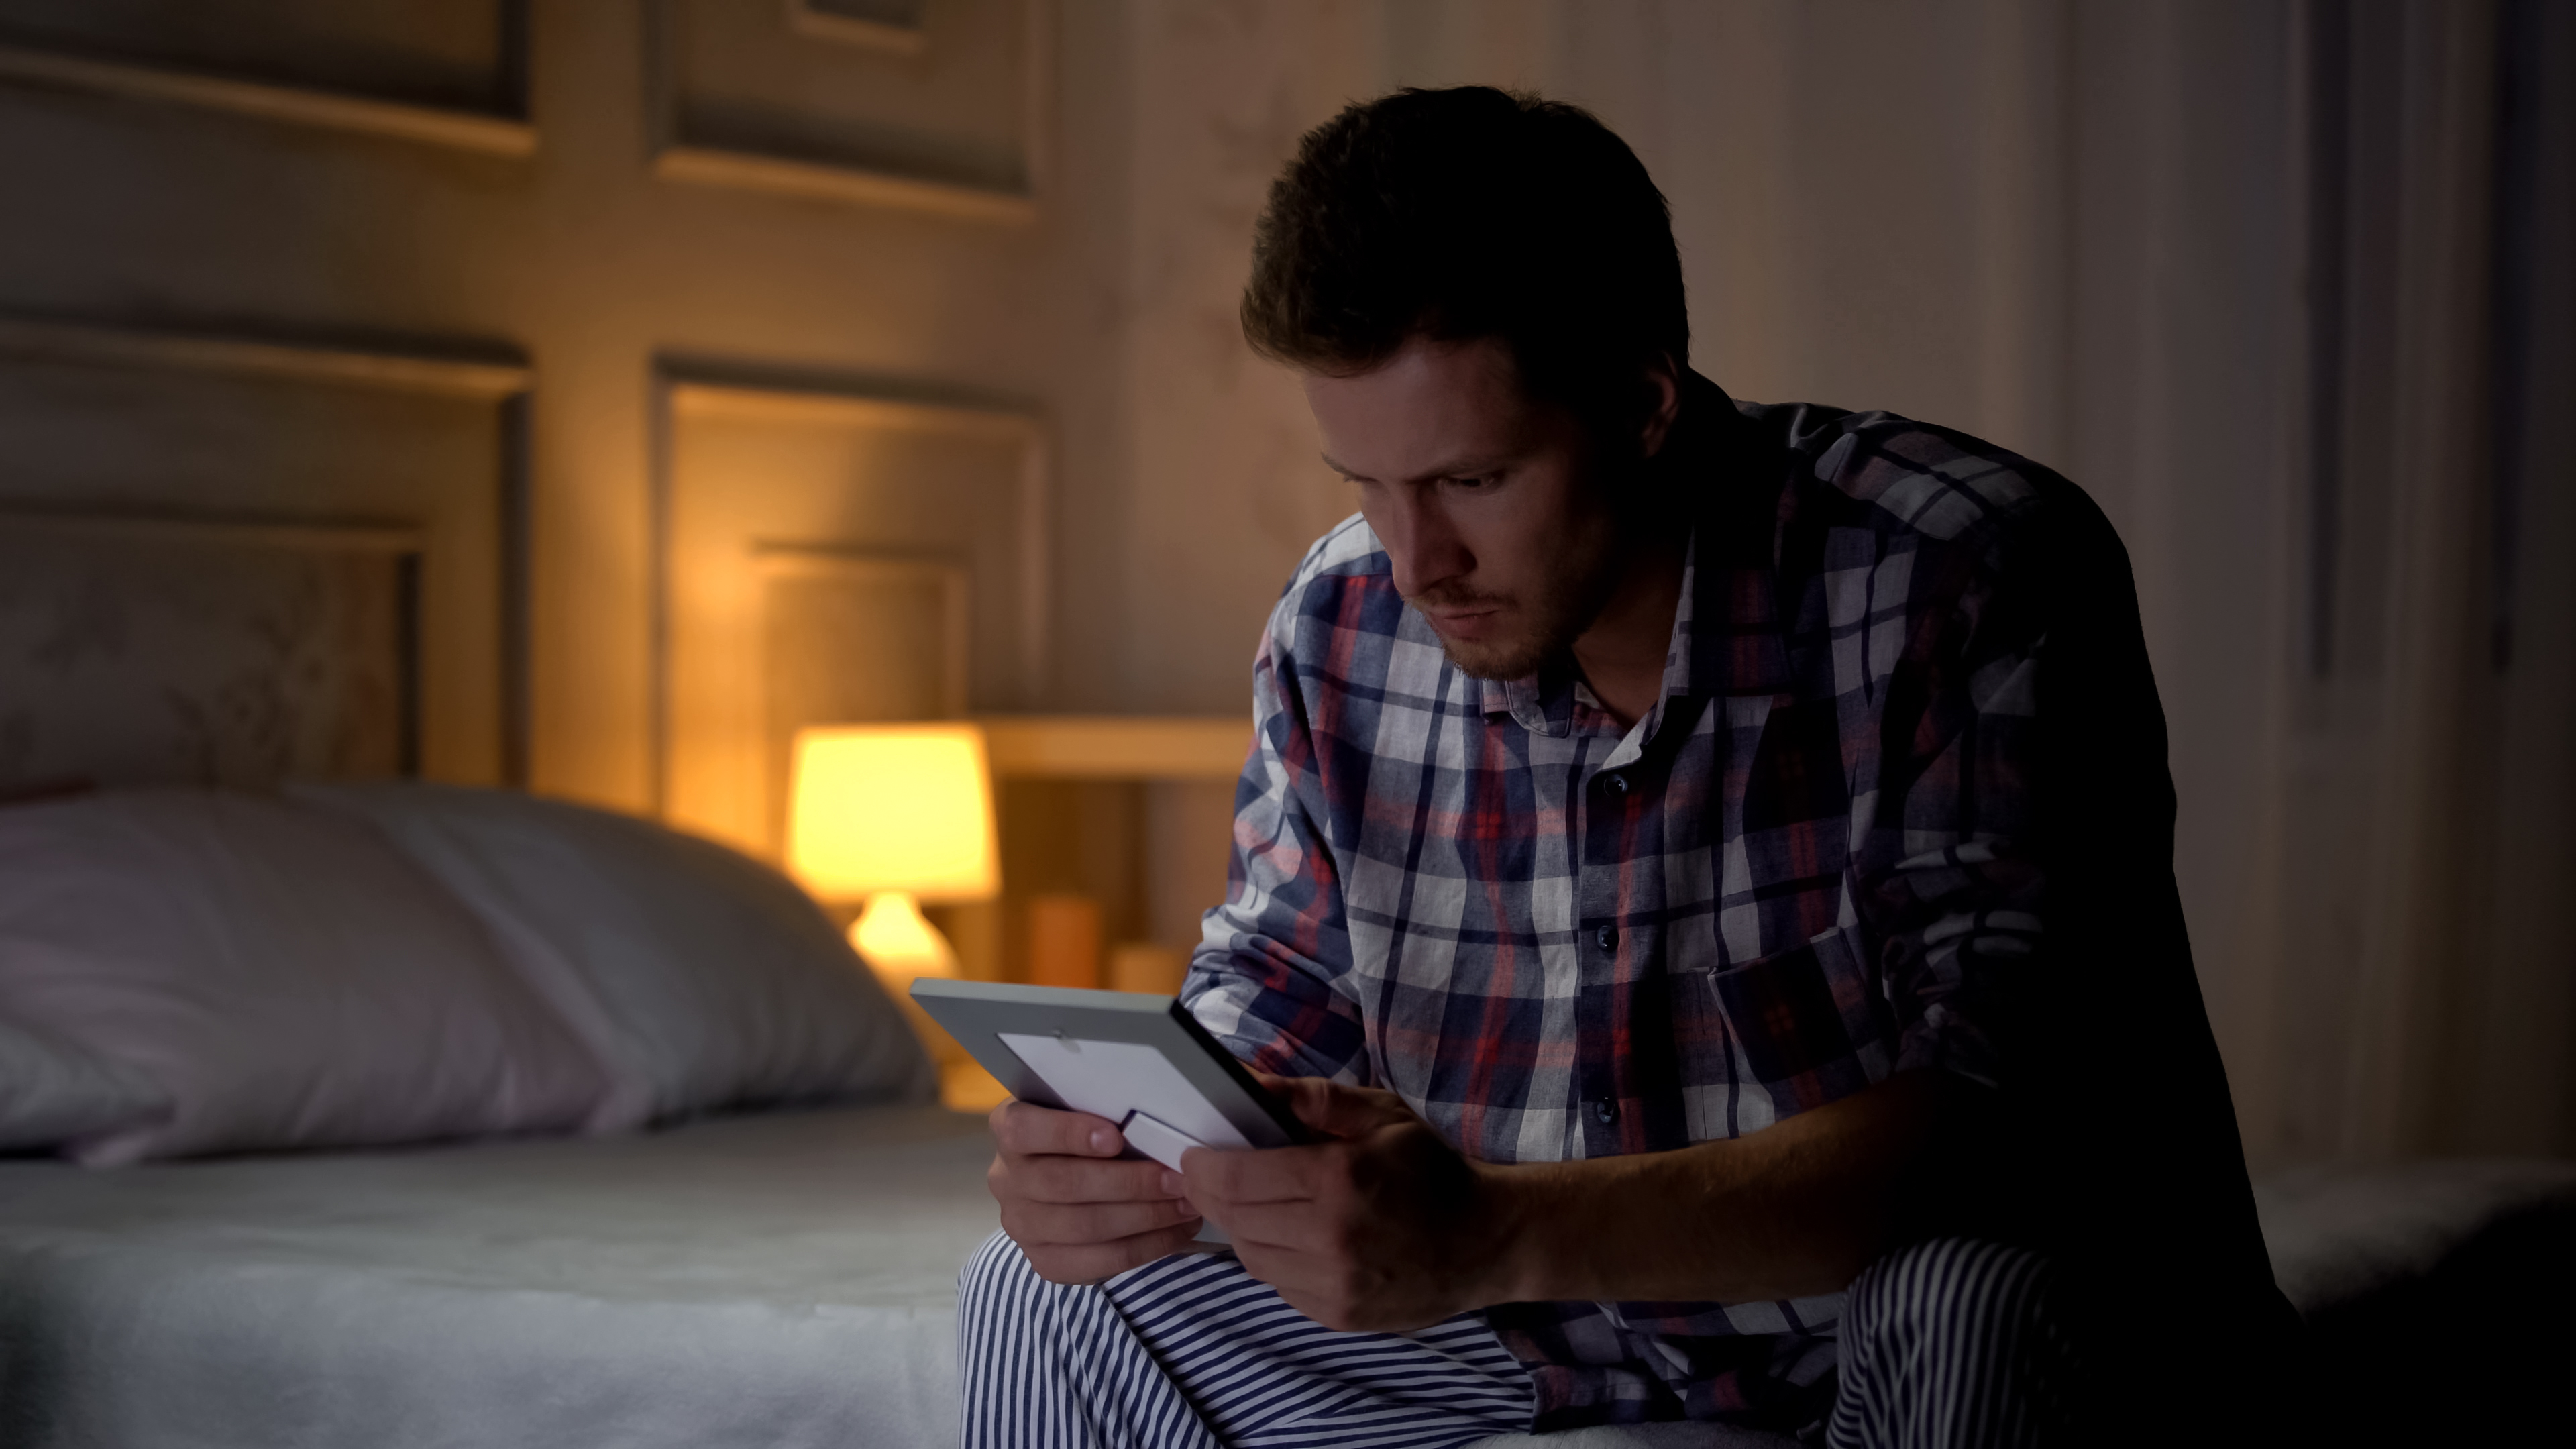 Ein unglücklicher Mann sitzt allein in seinem Zimmer und betrachtet ein Foto | Quelle: Shutterstock